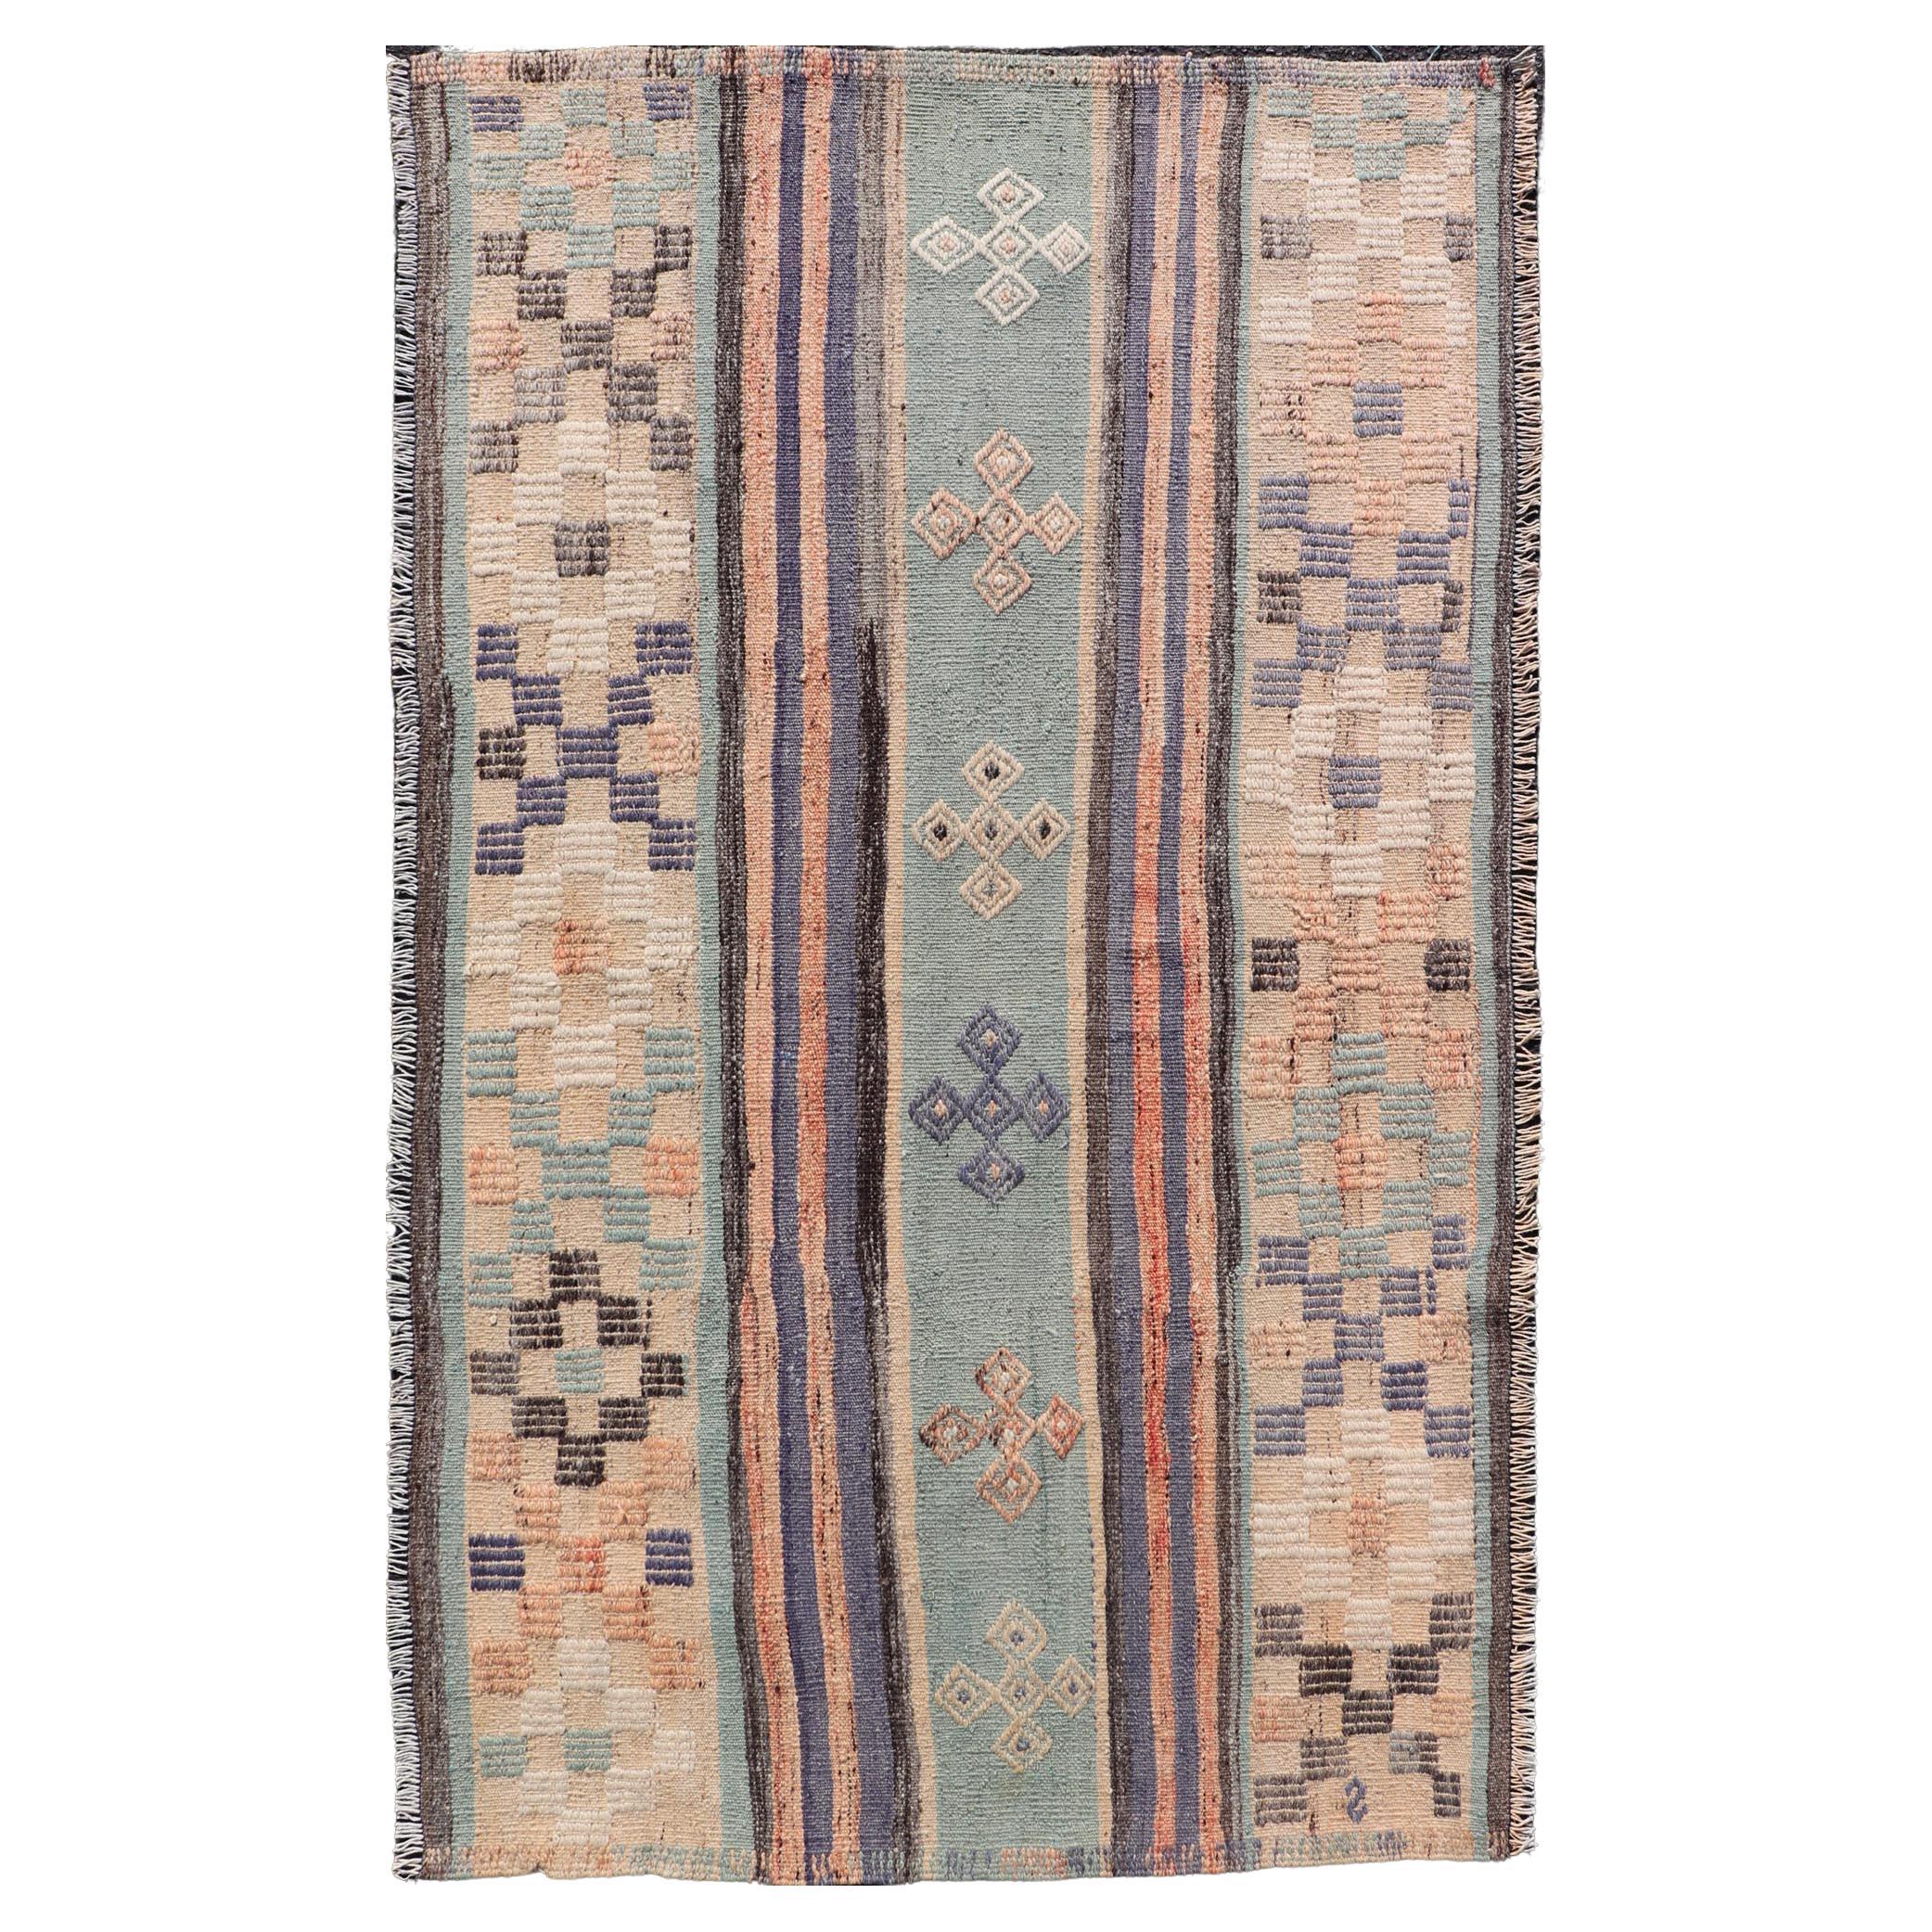 Türkischer Flachgewebe-Teppich mit Streifenmuster in Hellgrün, Lila und Pfirsich